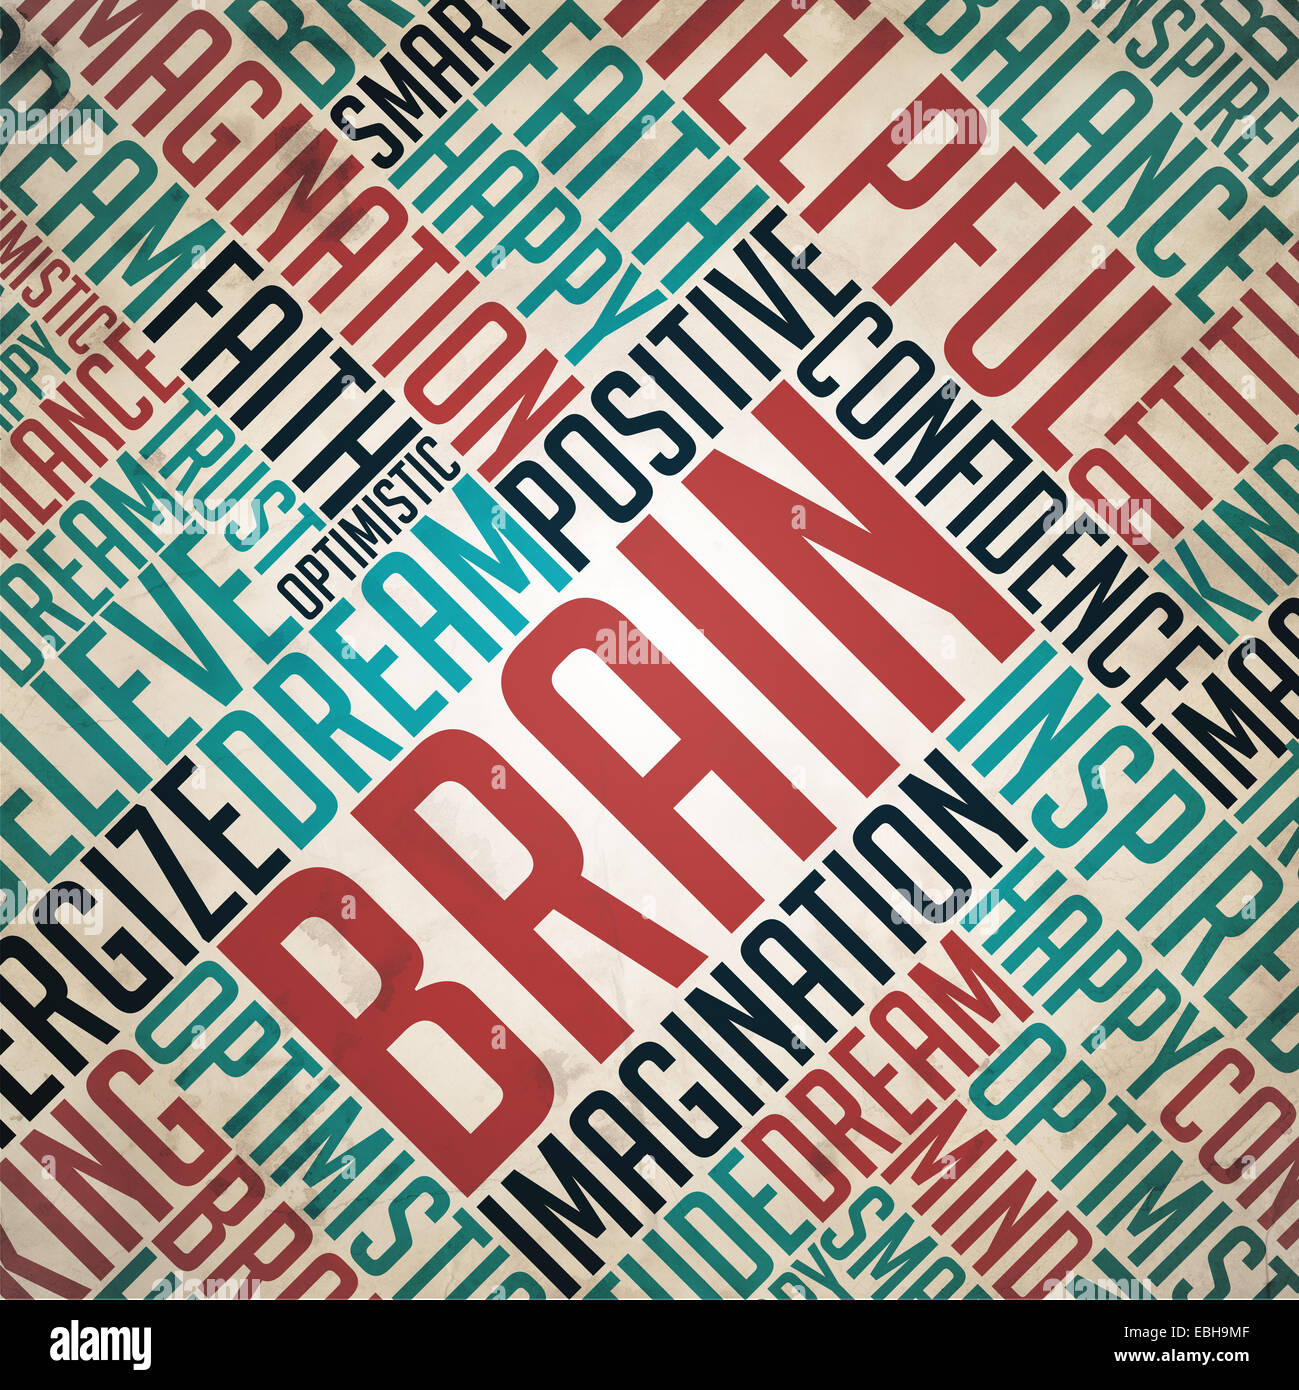 Cerveau - Retro mot Collage sur vieux papier. Banque D'Images